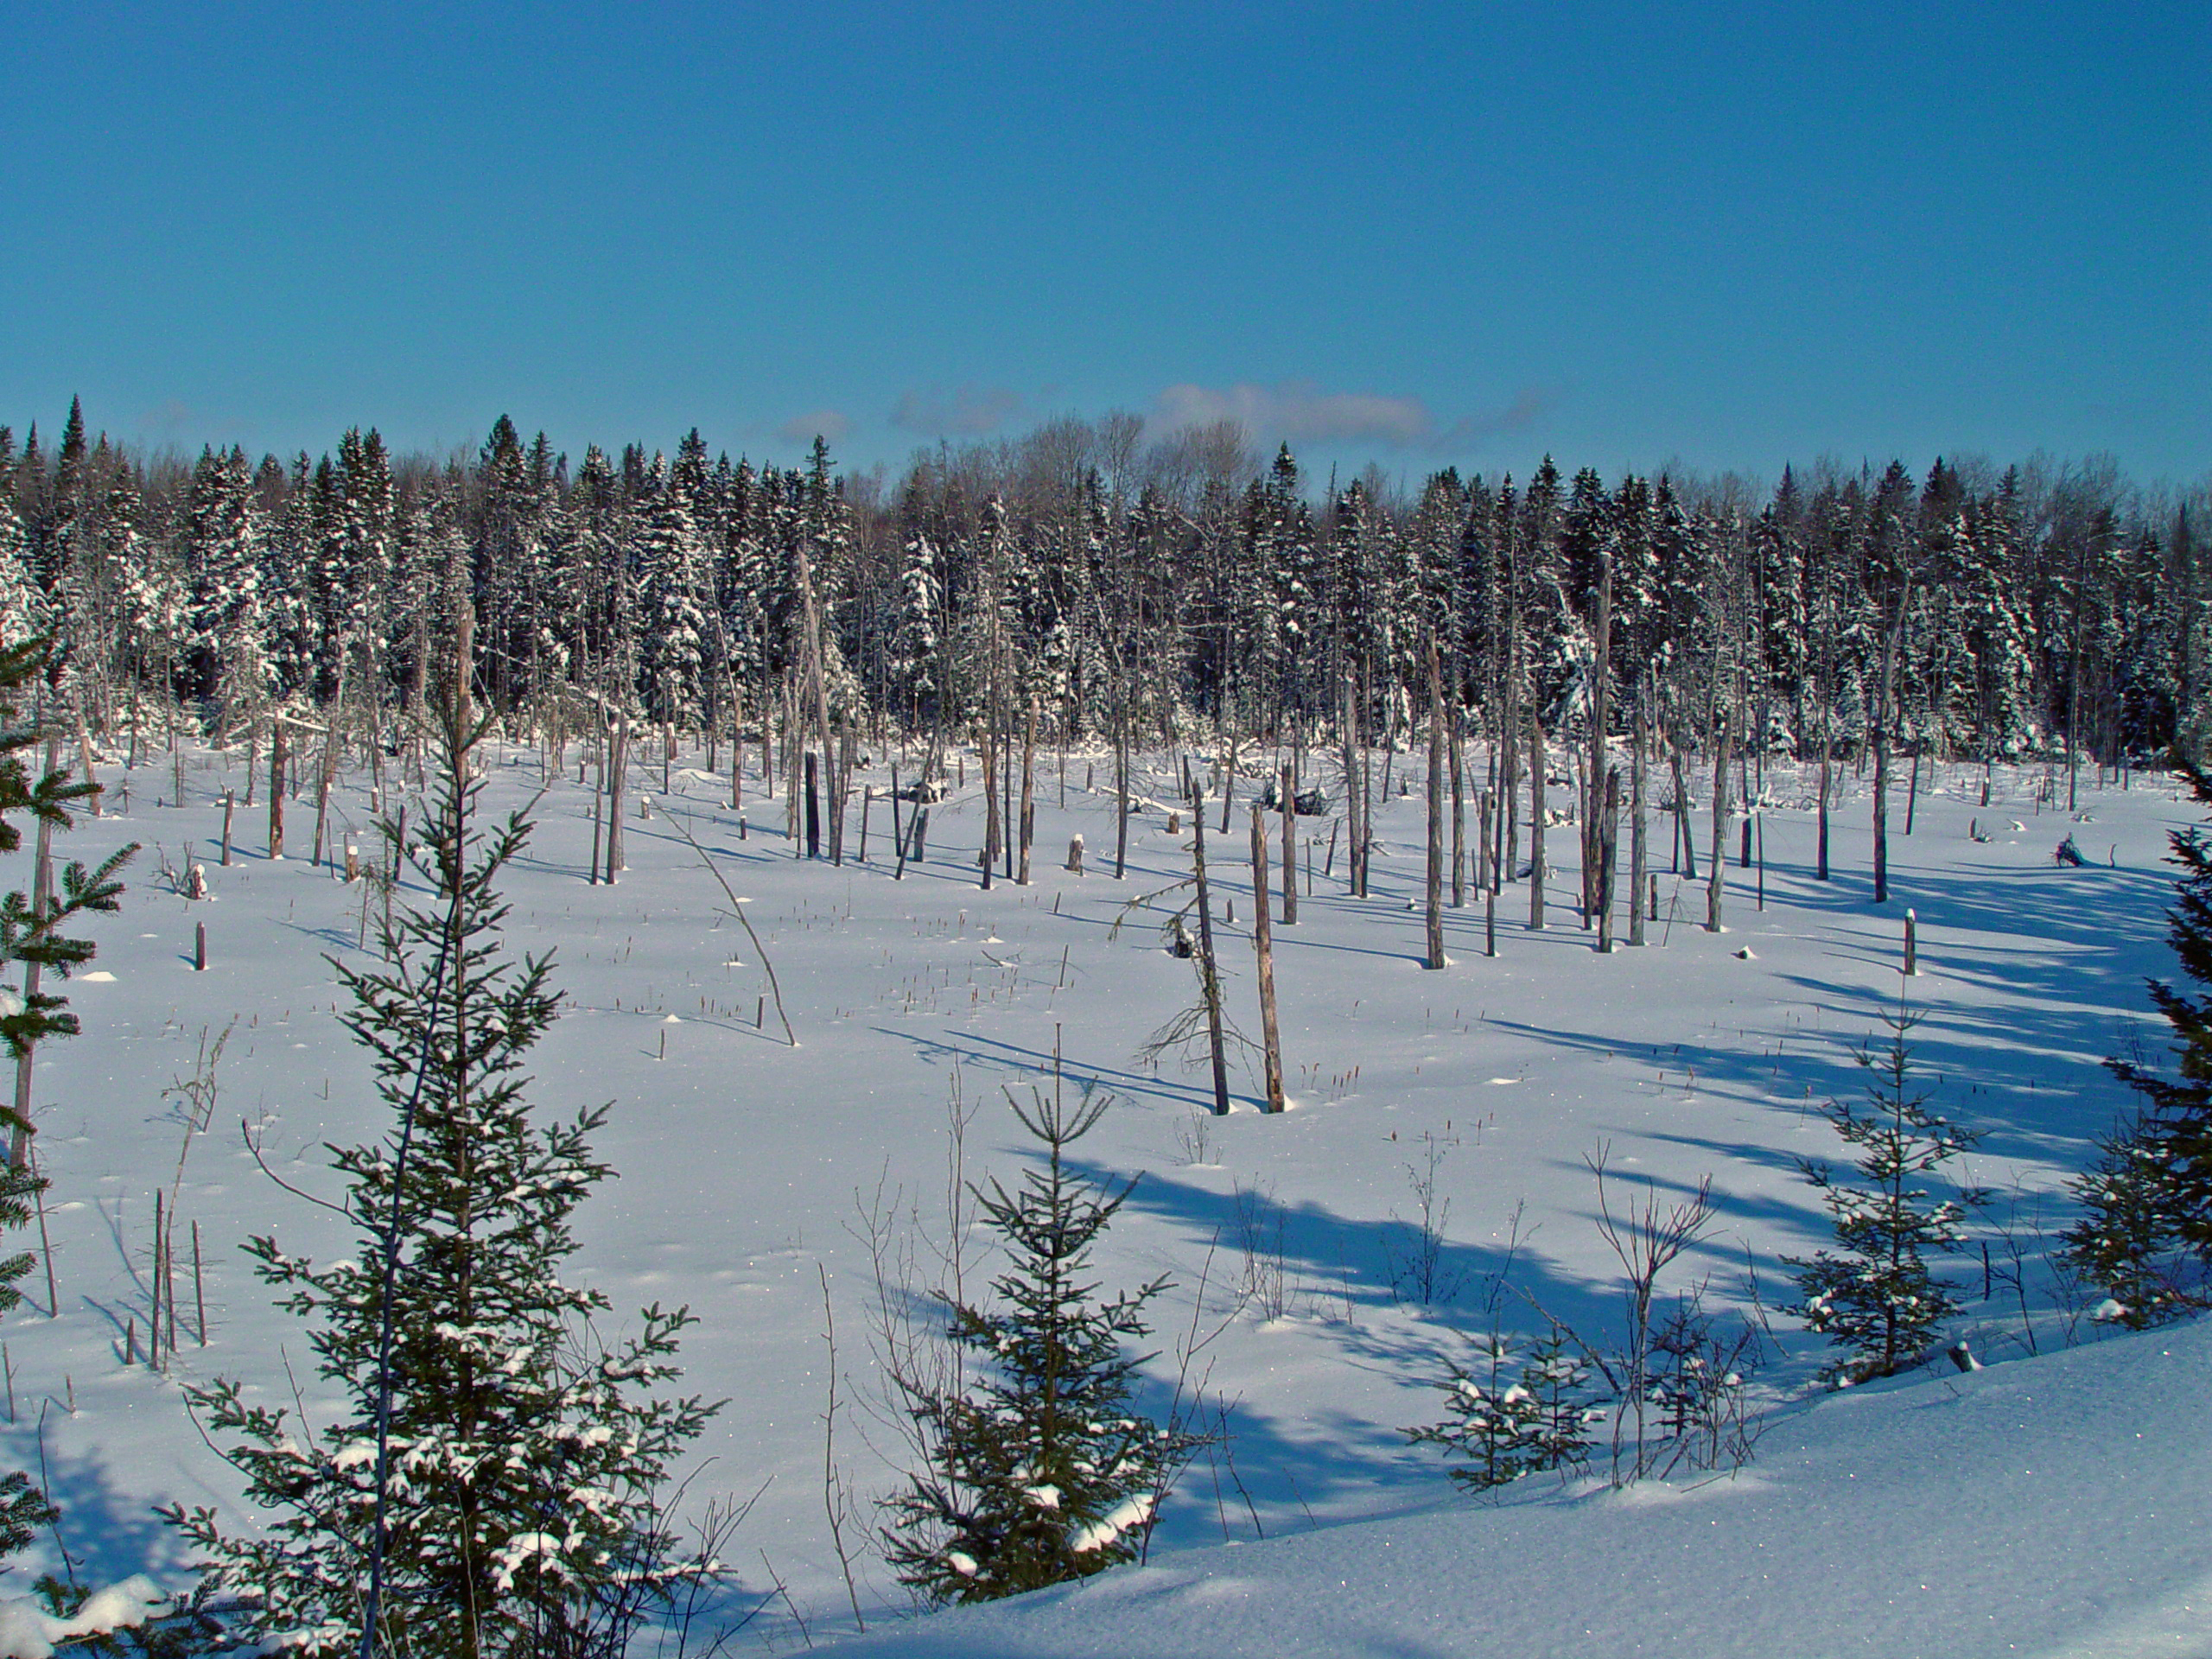 Winter landscape in far northern landscape at Aroostook National Wildlife Refuge